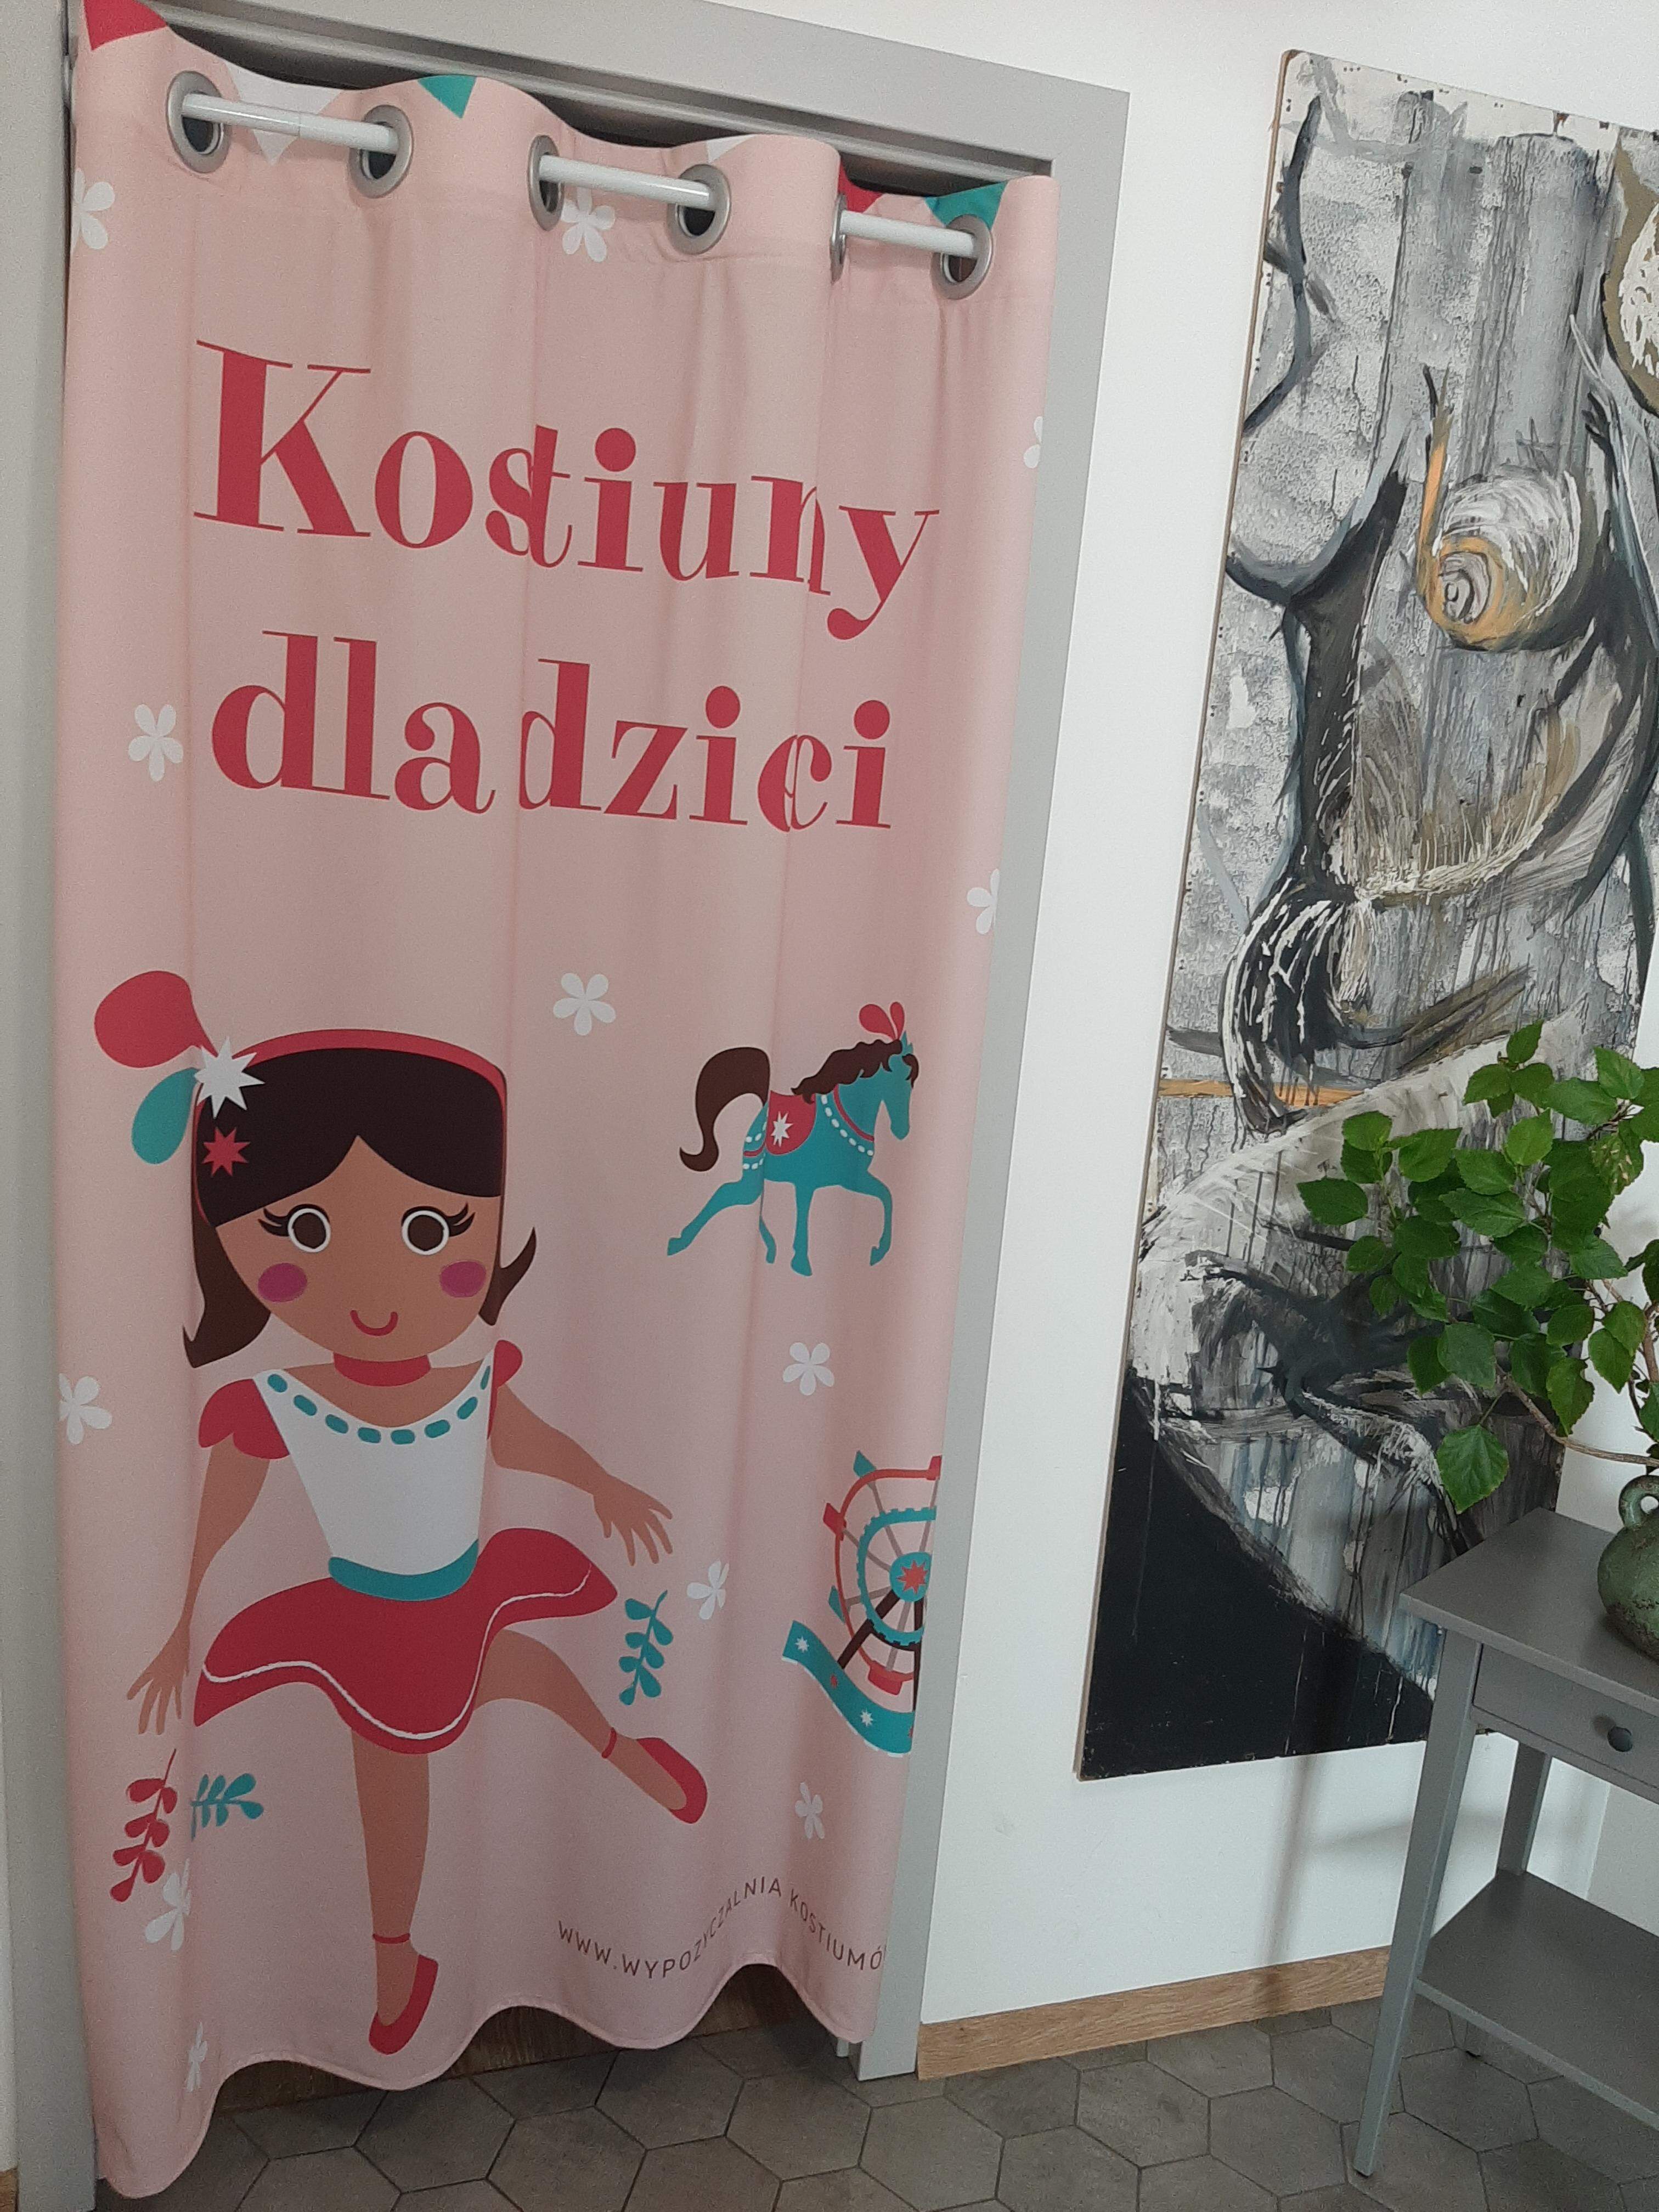 Kotara zasłona do przymierzalni sklep z ubraniami dla dzieci